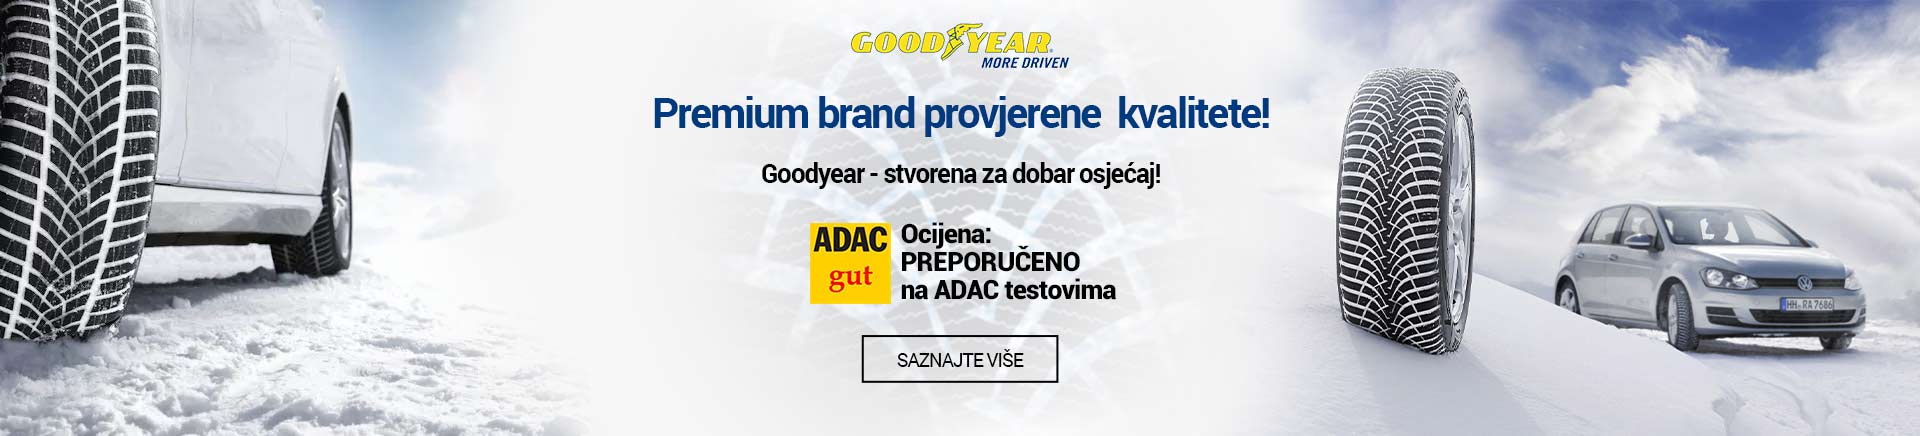 GoodYear gume premium brand provjerene kvalitete